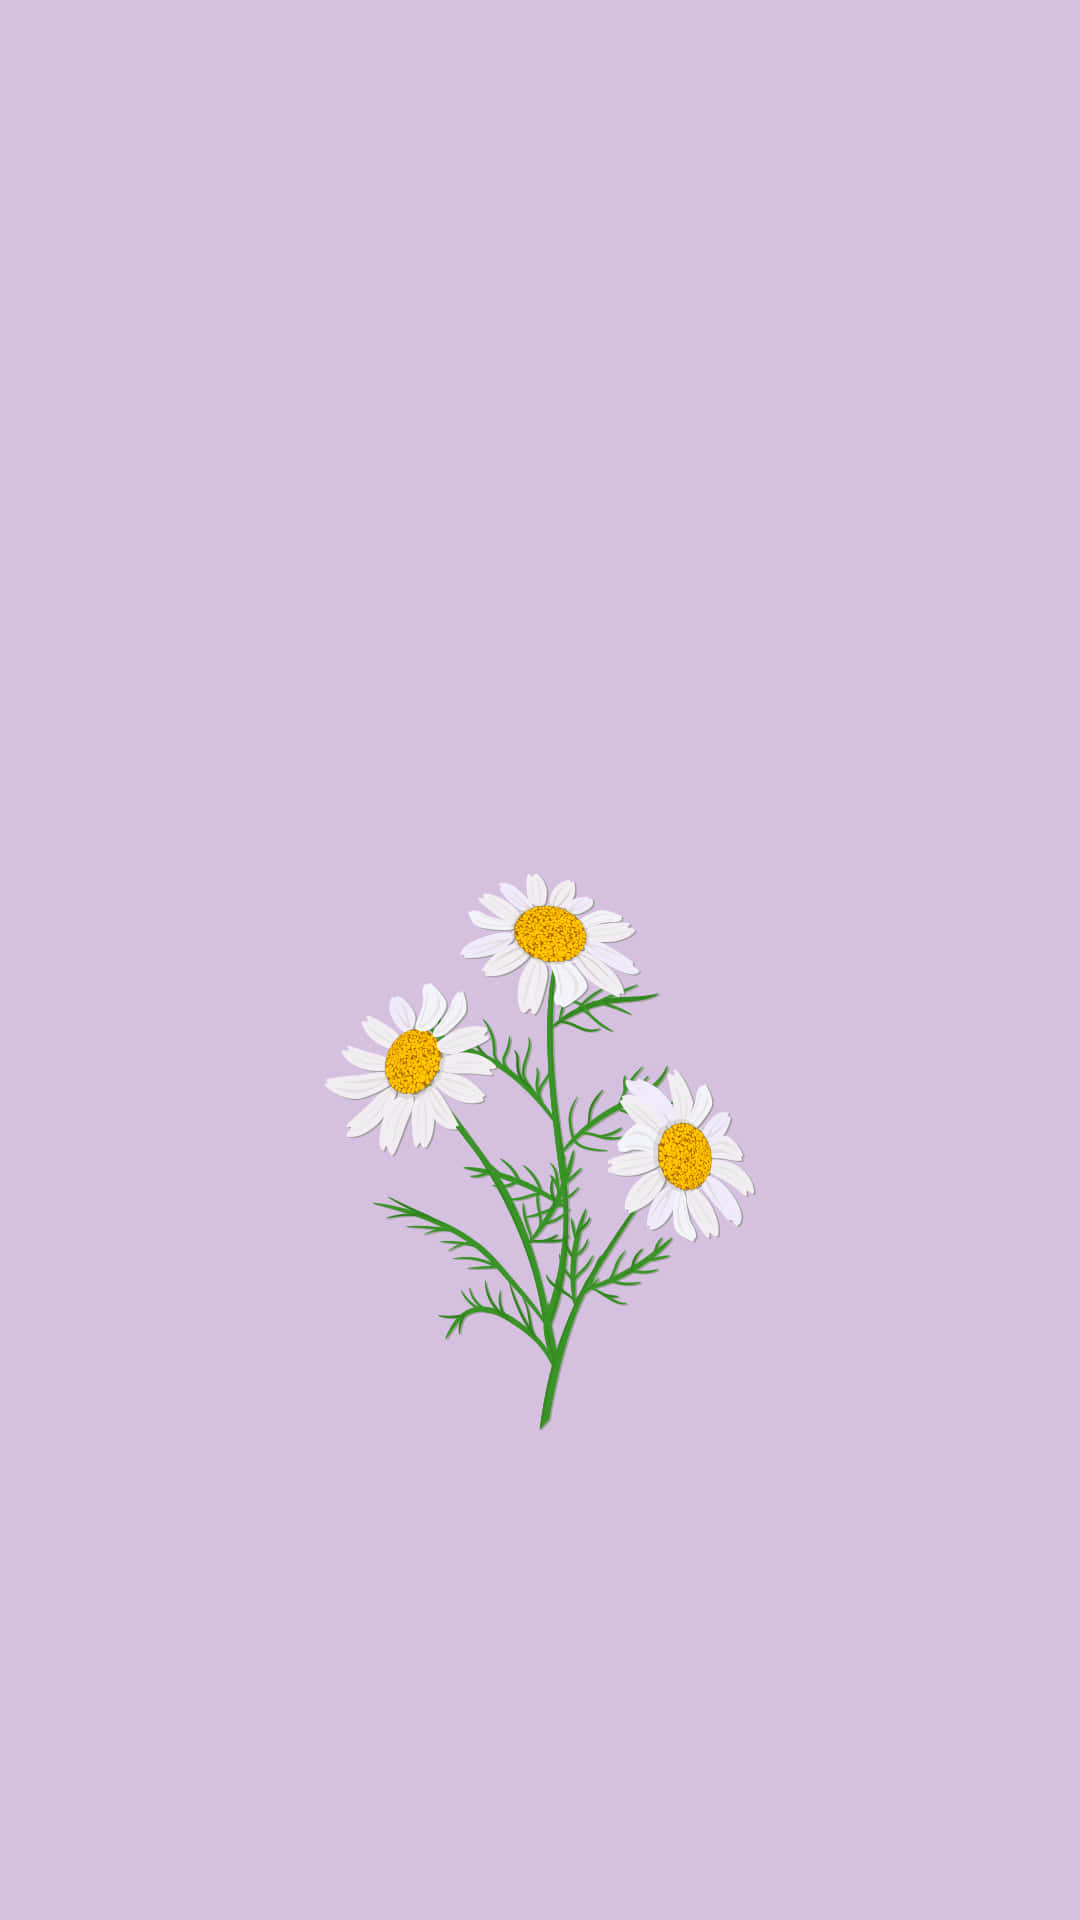 67+] Cute Spring Backgrounds - WallpaperSafari